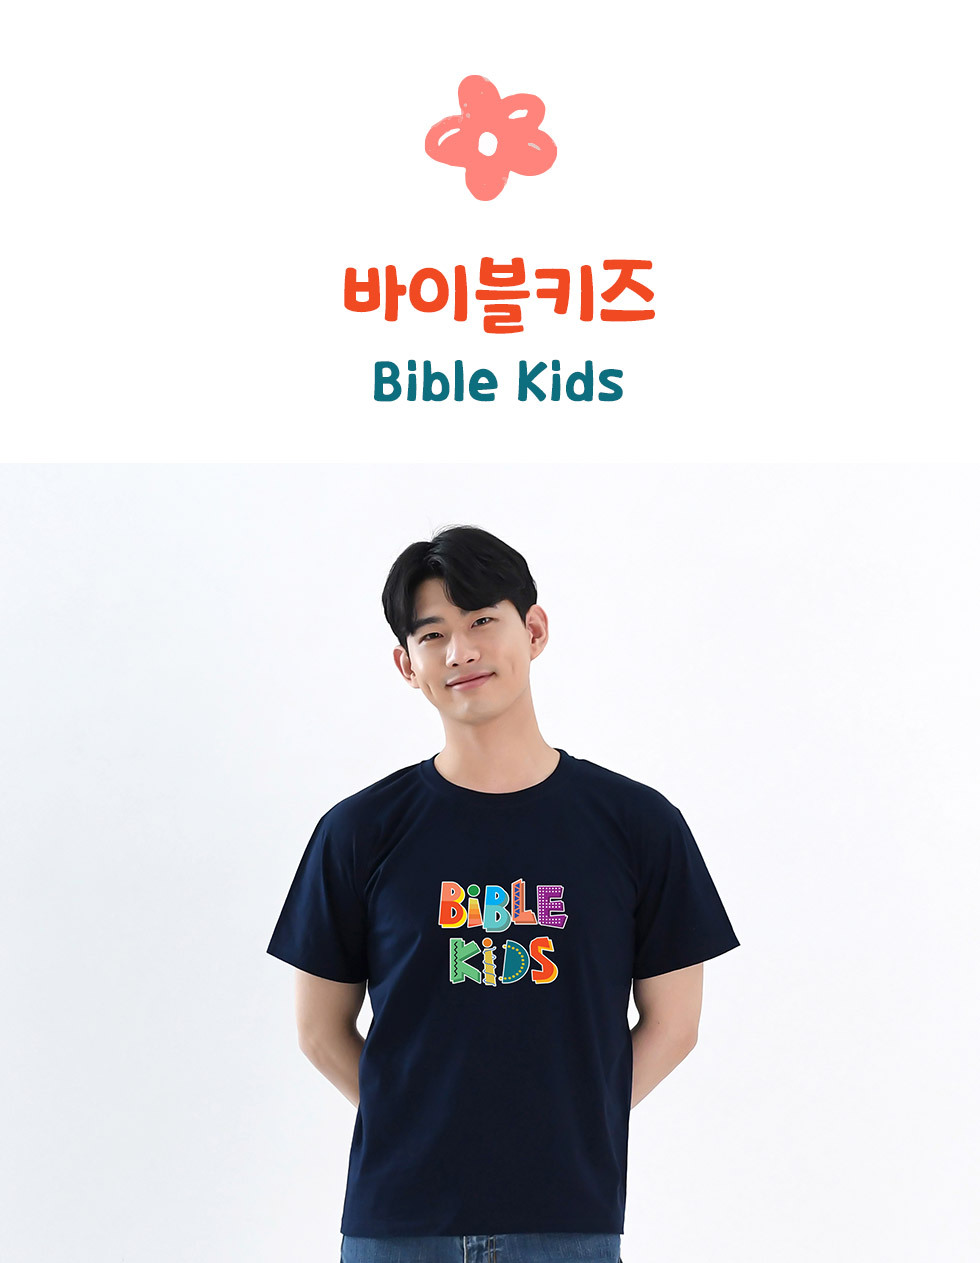 말씀을 품은 어린이, bible kids - 성인티셔츠(바이블키즈) 디자인 소개